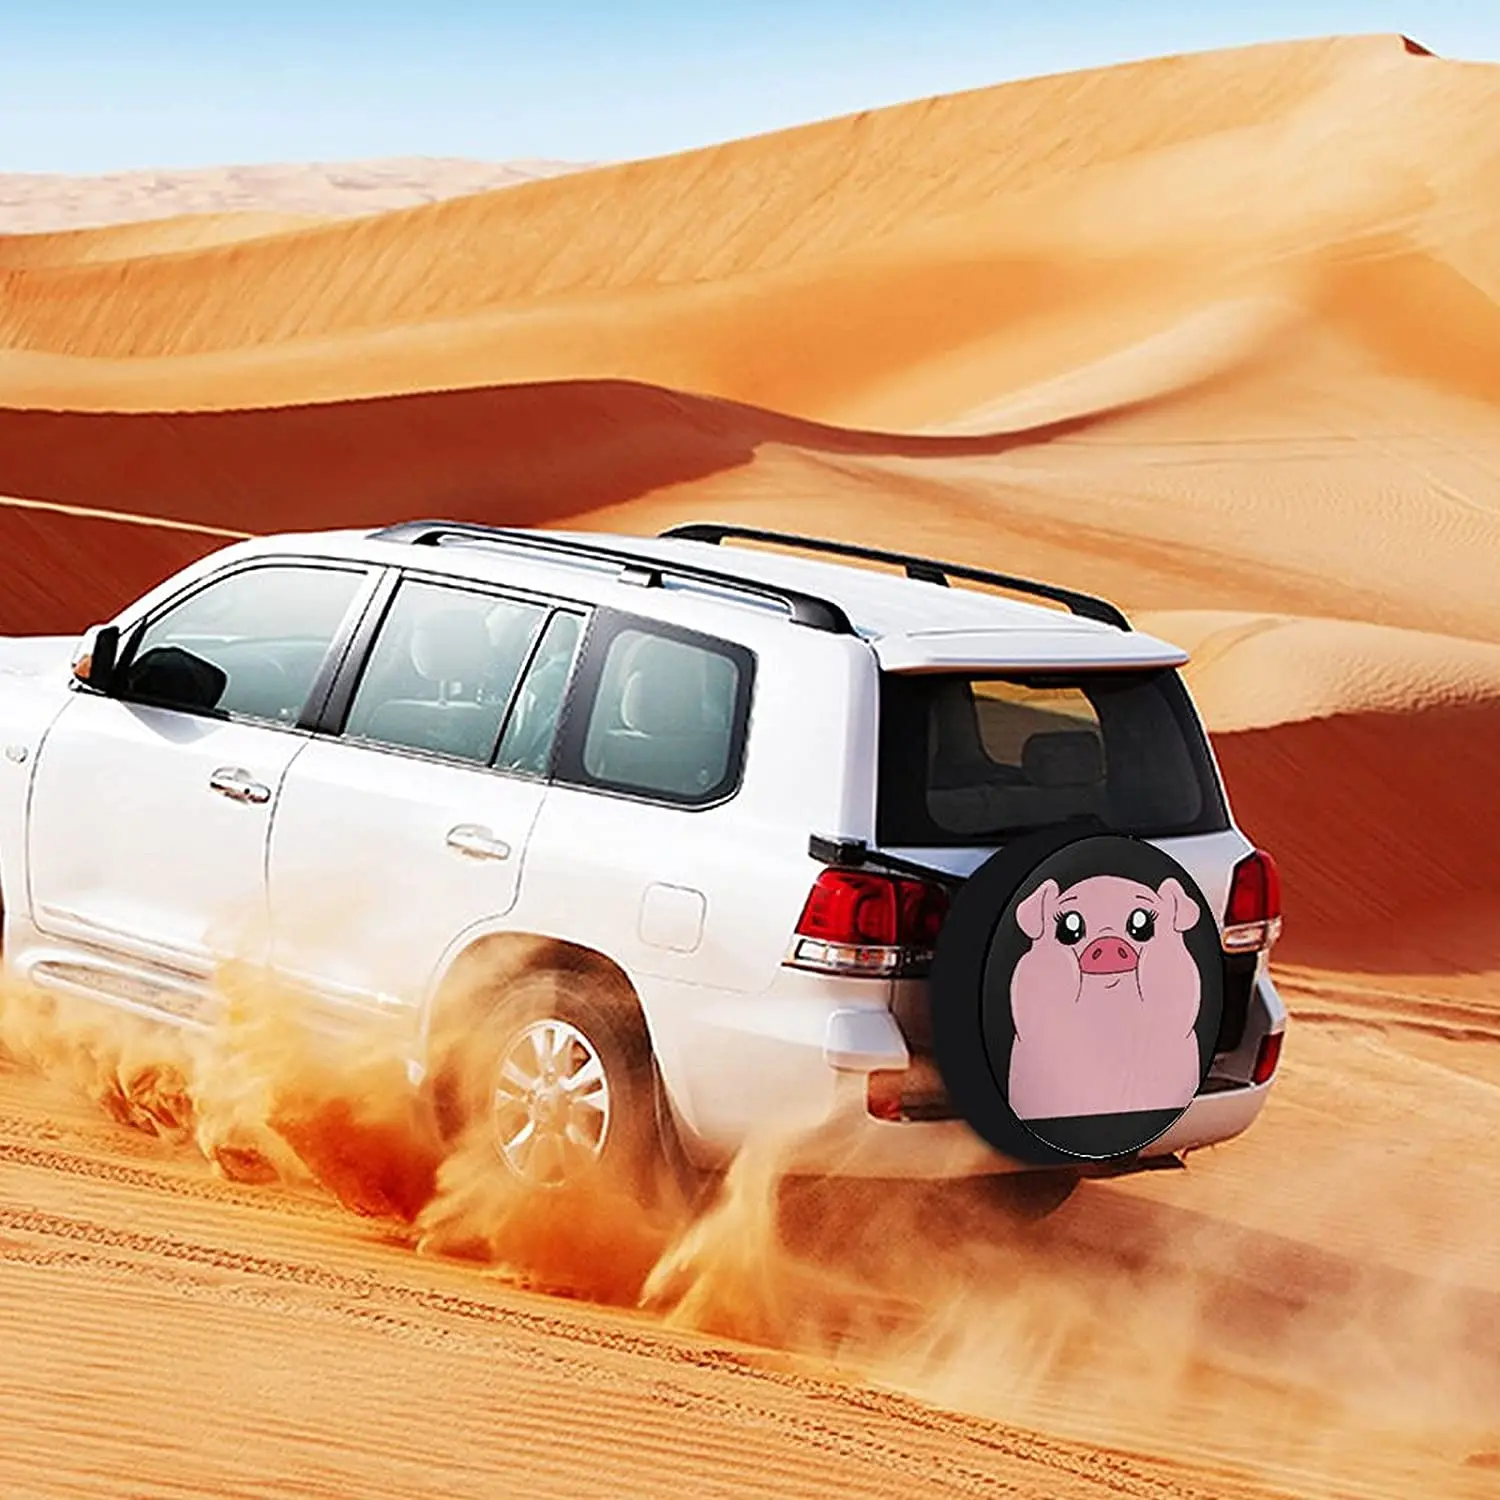 Чехлы для шин Funny Cute Pink Pig Universe Exploration, защитные чехлы для колес, защита от атмосферных воздействий, защита от ультрафиолета, чехол для запасного колеса . ' - ' . 2